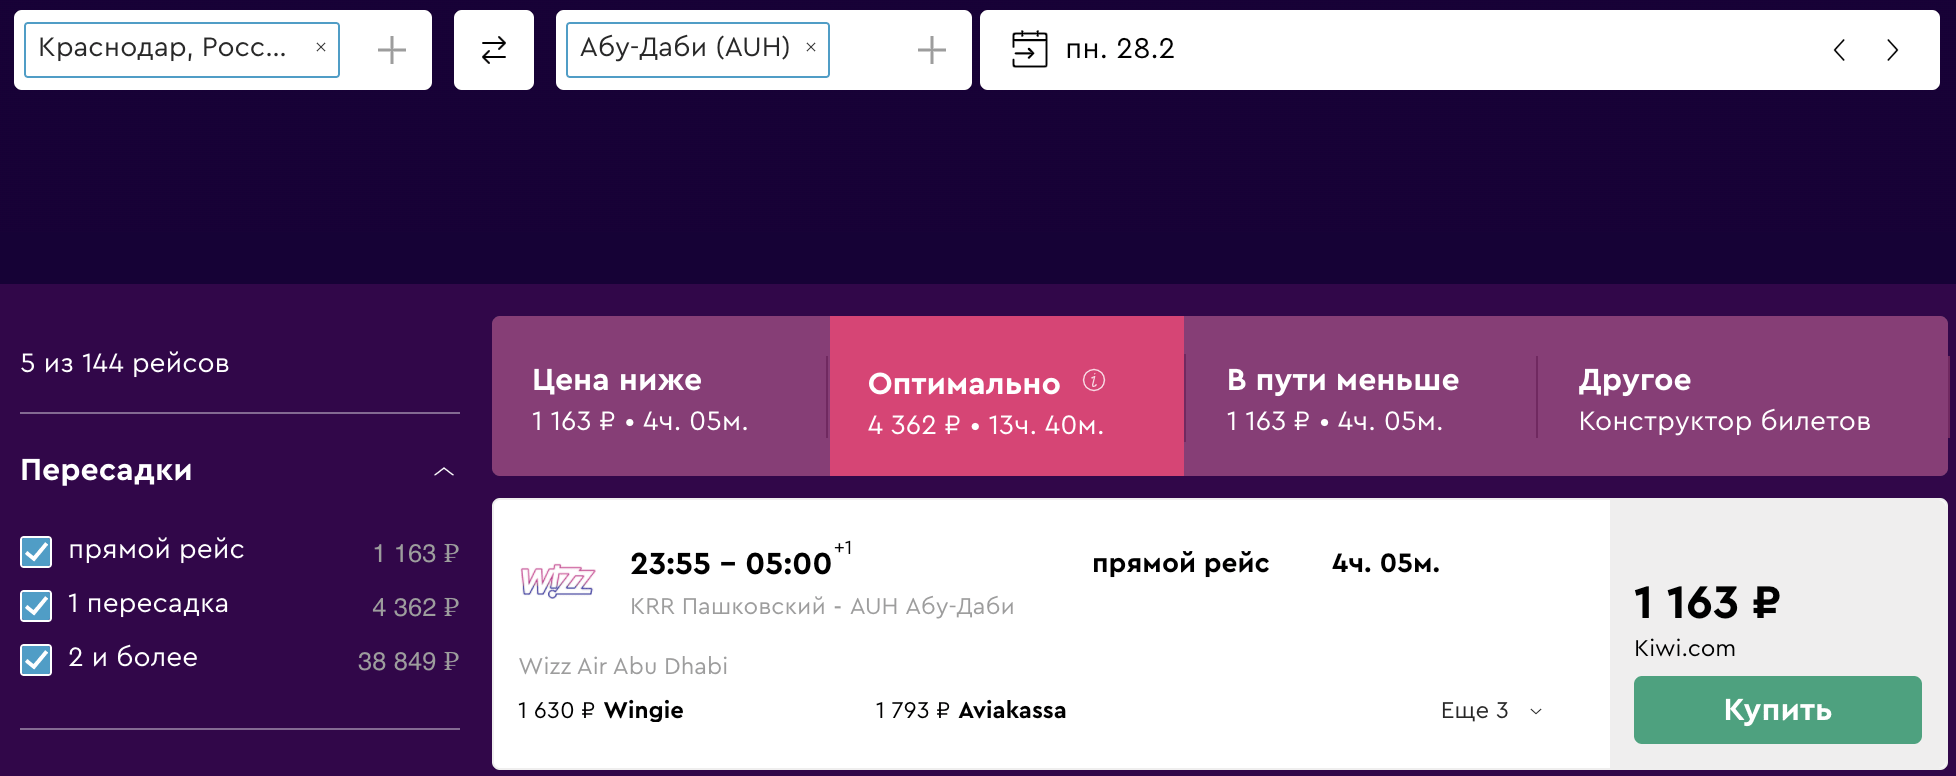 Скидки 20% у Wizz Air на рейсы в ОАЭ! Летим из Москвы и Краснодара в Абу-Даби от 1100₽ в одну сторону, от 2700₽ туда-обратно